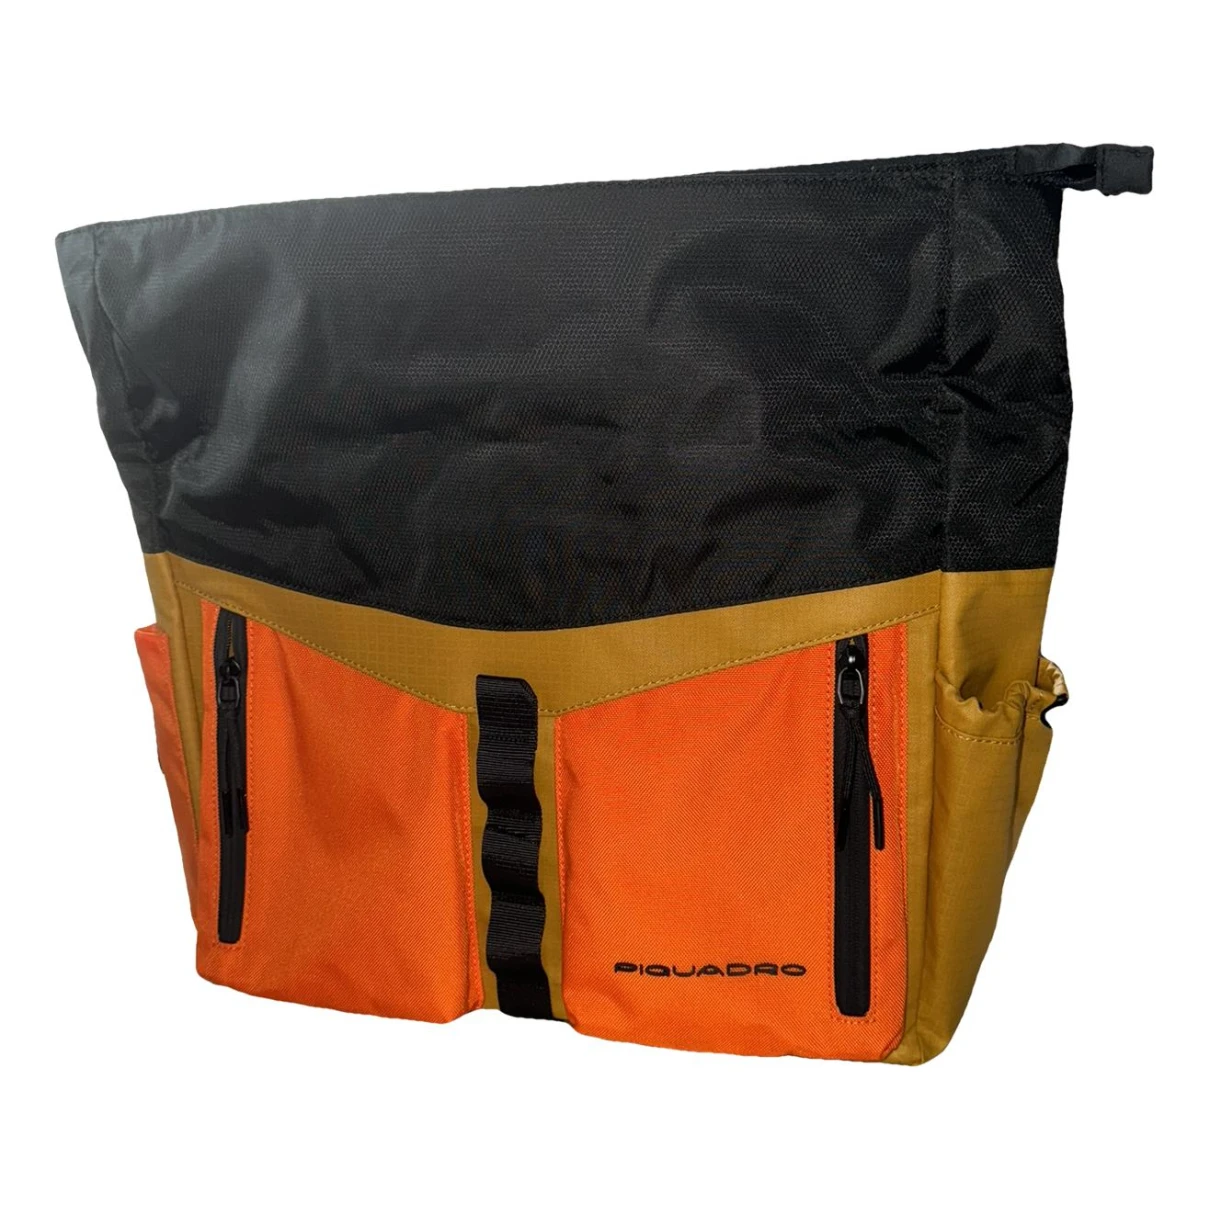 Pre-owned Piquadro Small Bag In Multicolour